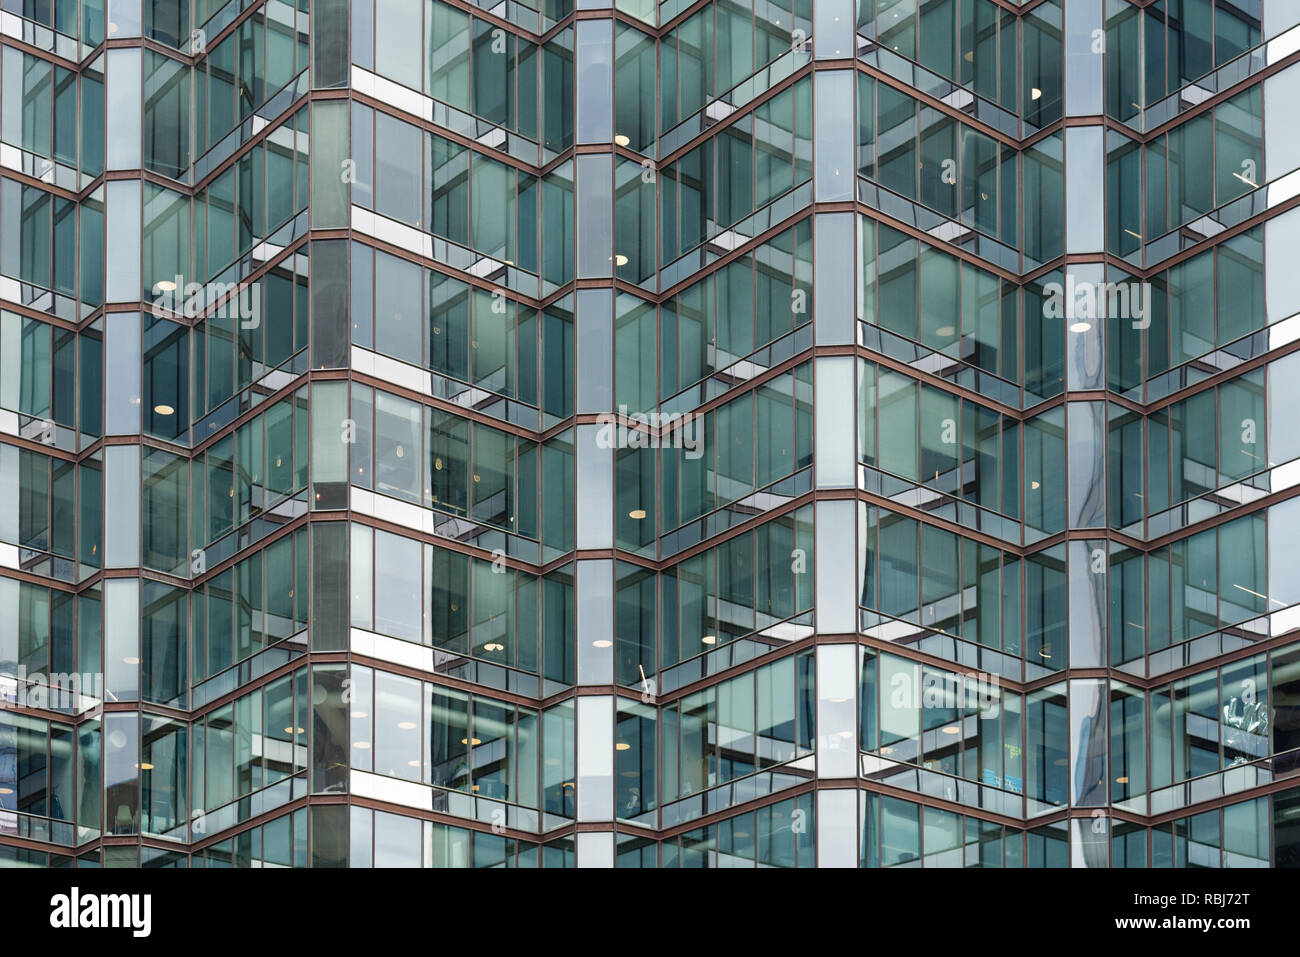 L'architecture moderne au numéro 1, Avenue University, Toronto Banque D'Images